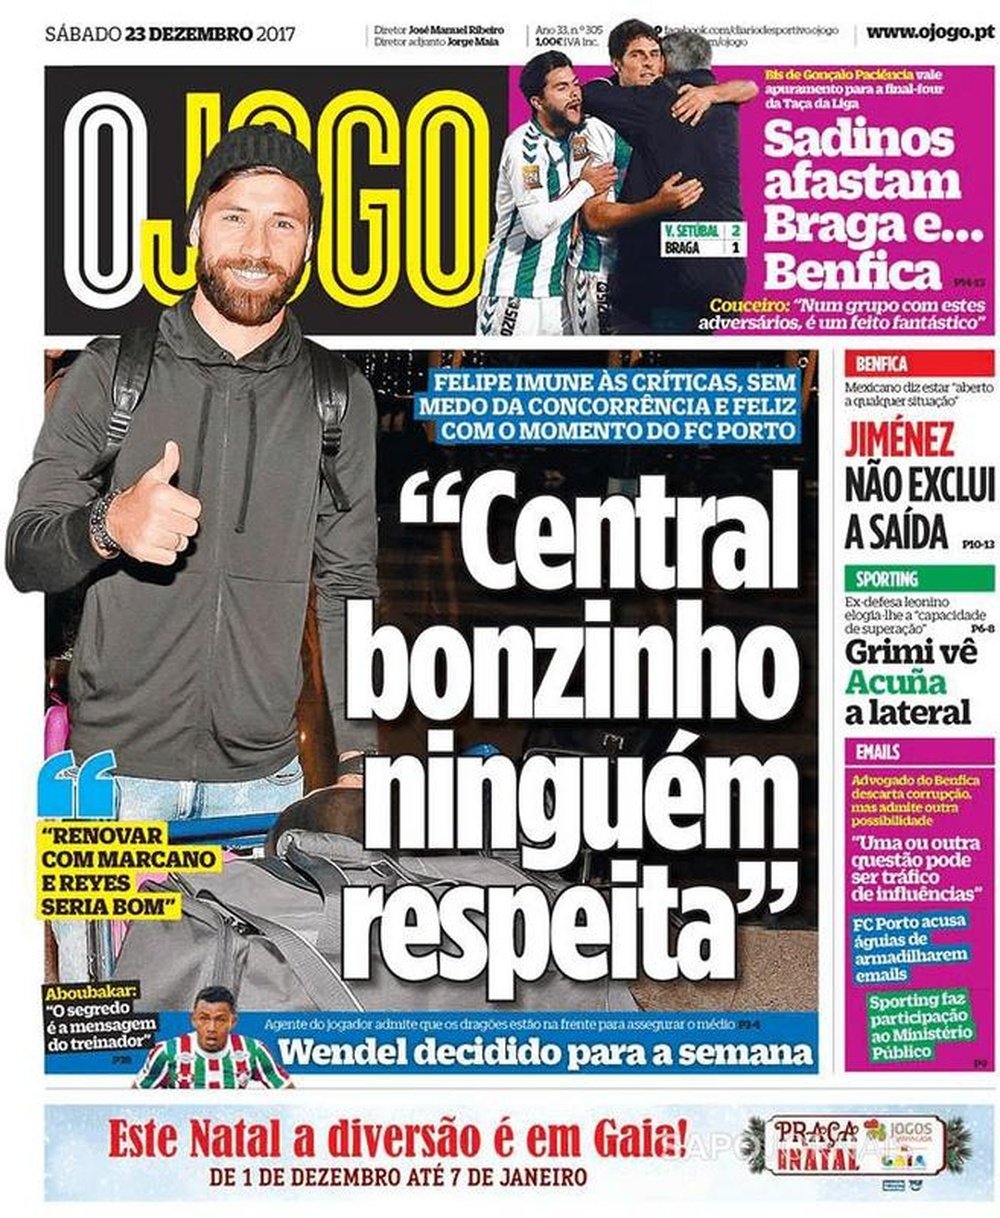 Capa do jornal 'O Jogo', 23/12/2017. O Jogo